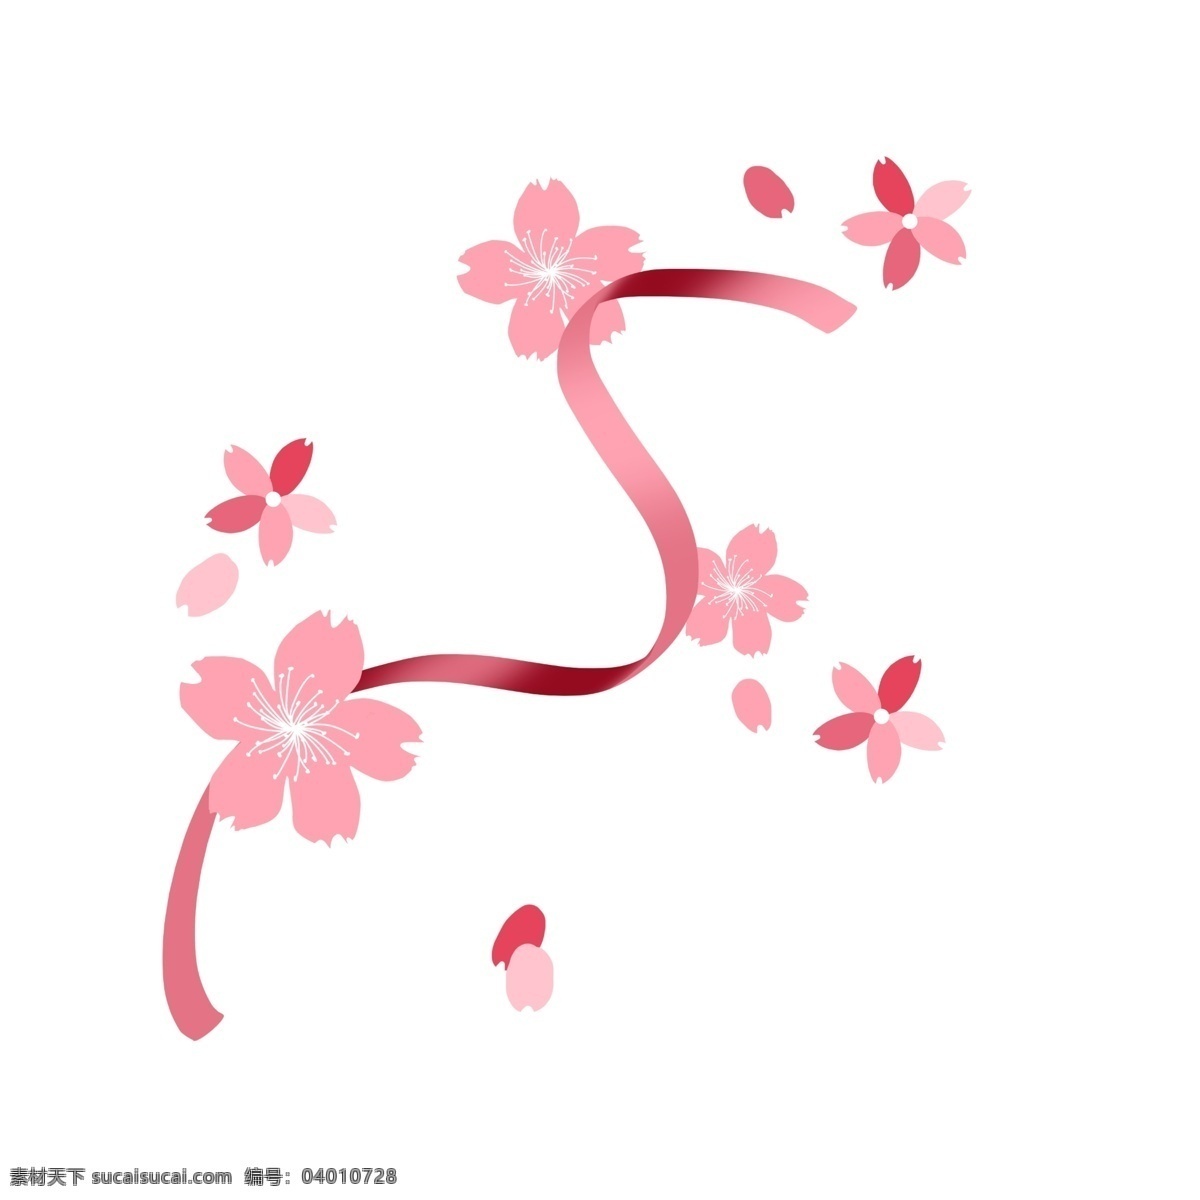 粉色 樱花 丝带 装饰 插画 粉色的樱花 粉色丝带 花朵 花卉装饰 唯美的樱花 植物 花瓣装饰 卡通樱花插画